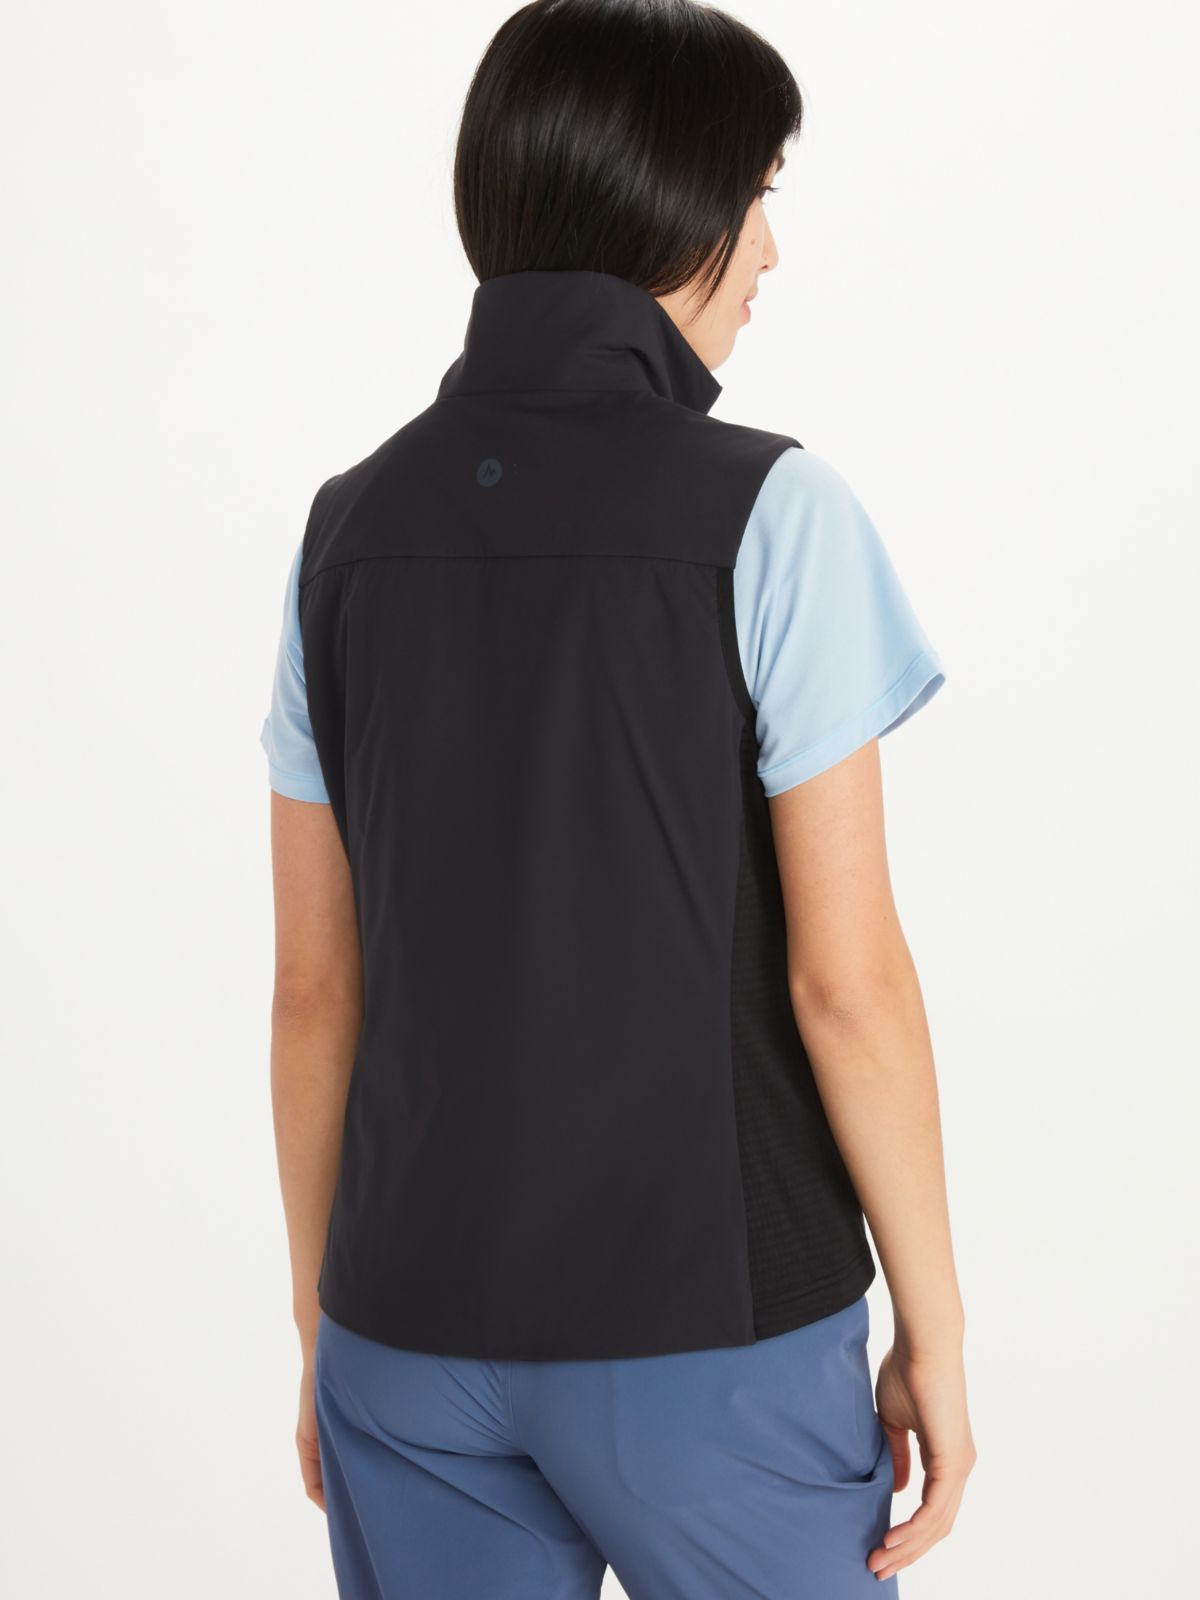 Women's Novus LT Hybrid Vest